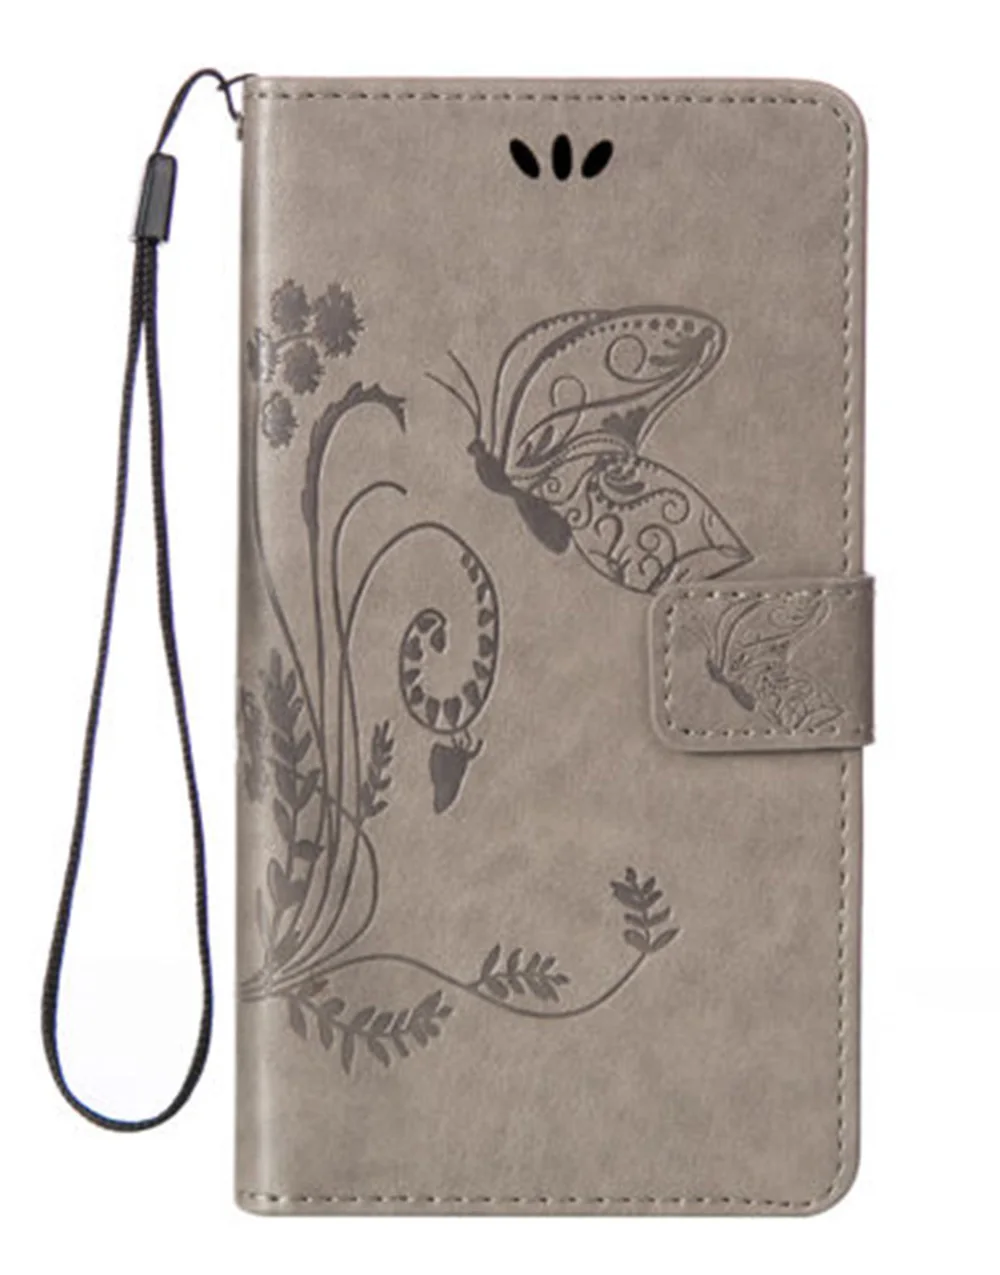 Чехол-бумажник для Philips Xenium X598 S386 V787 X588 X596, высокое качество, кожаный защитный чехол для мобильного телефона - Цвет: Gray